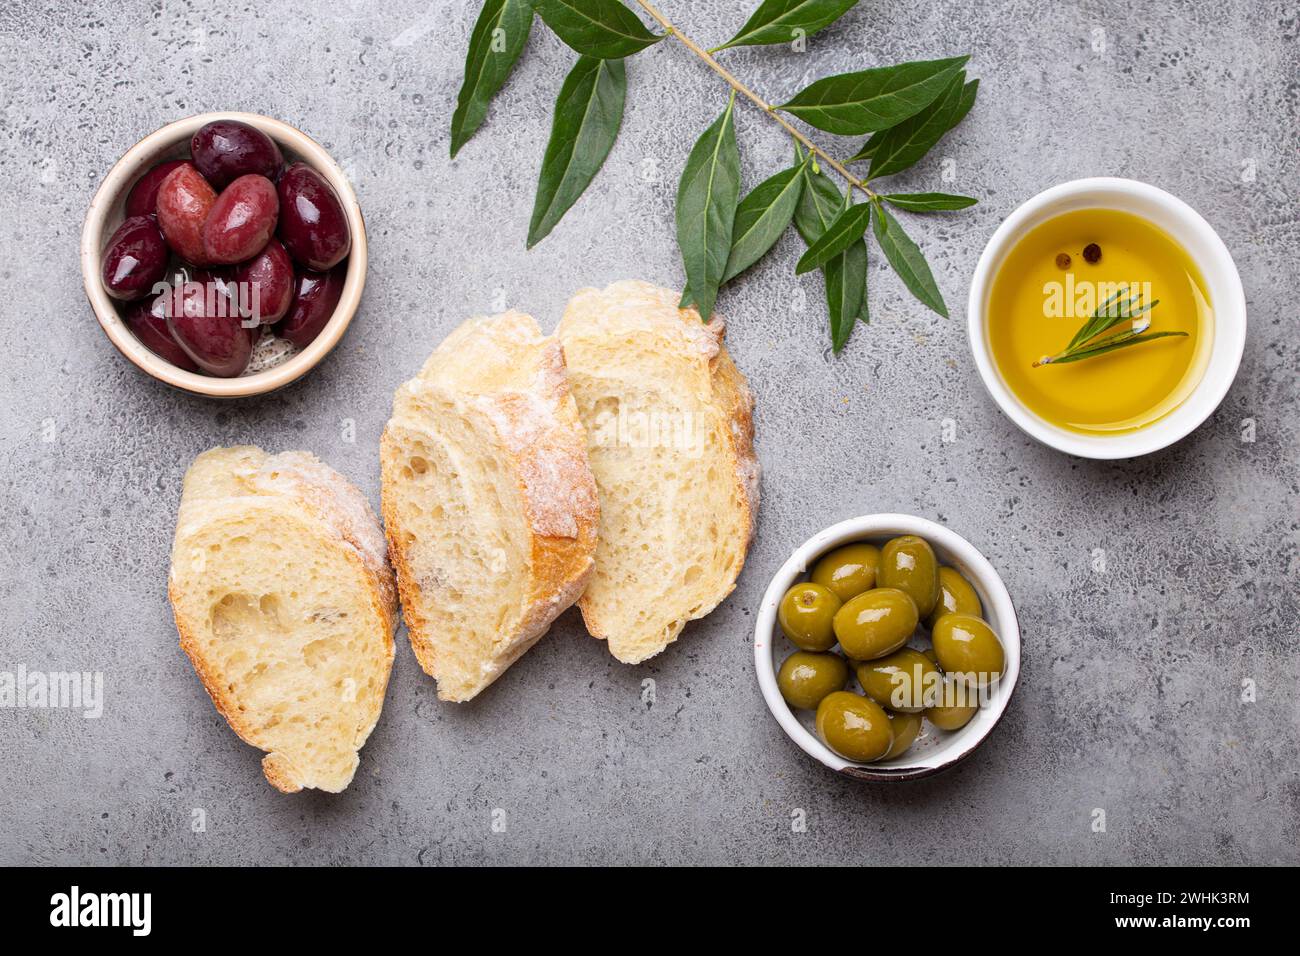 Tranches de ciabatta fraîche, olives vertes et brunes, huile d'olive au romarin, branches d'olivier sur bac rustique en pierre de béton gris Banque D'Images